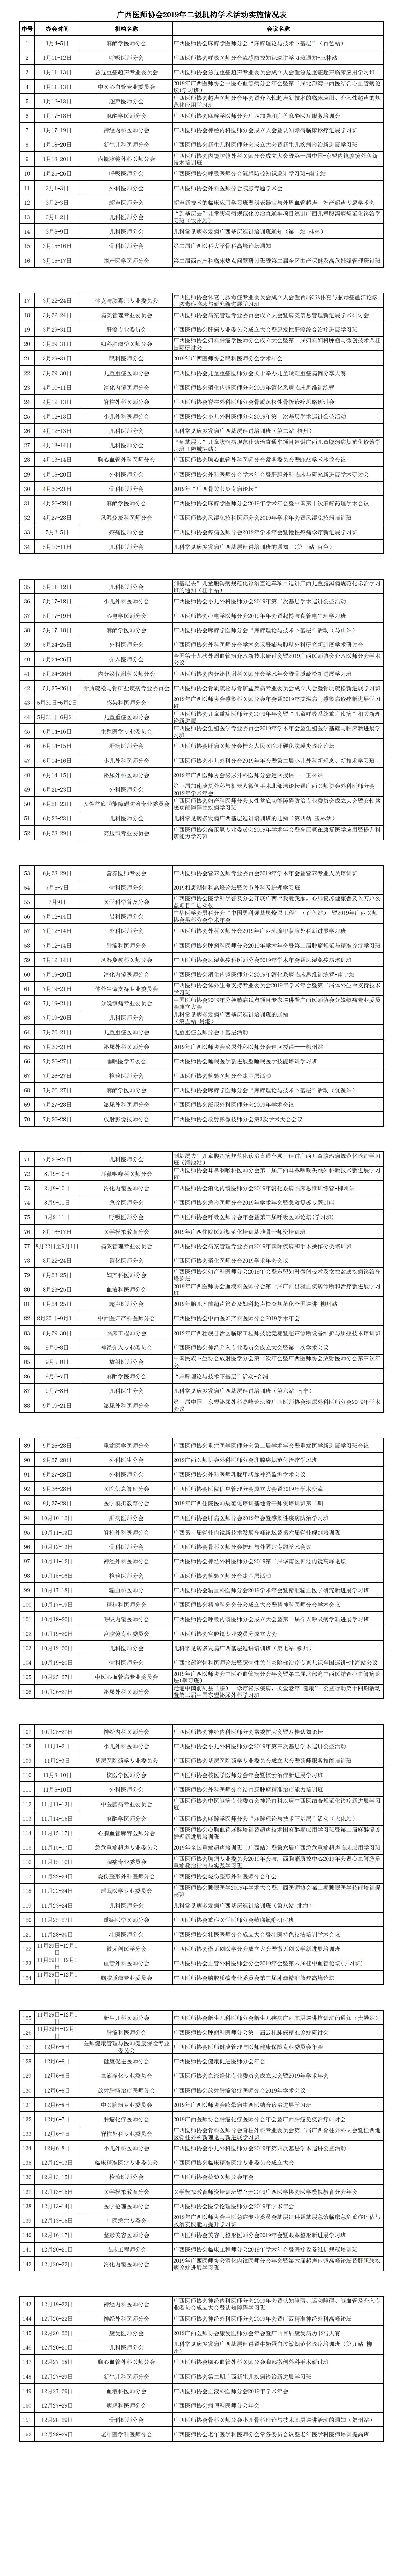 广西医师协会2019年二级机构学术活动实施情况表_00.jpg